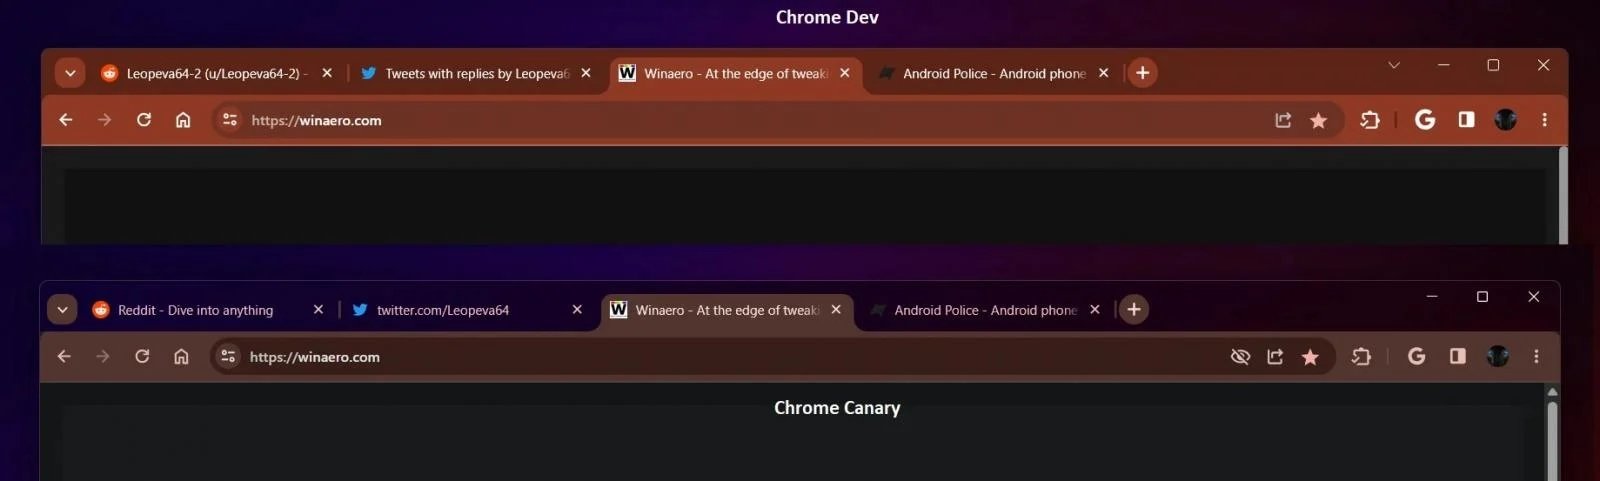 imagem de comparação do tema do Chrome